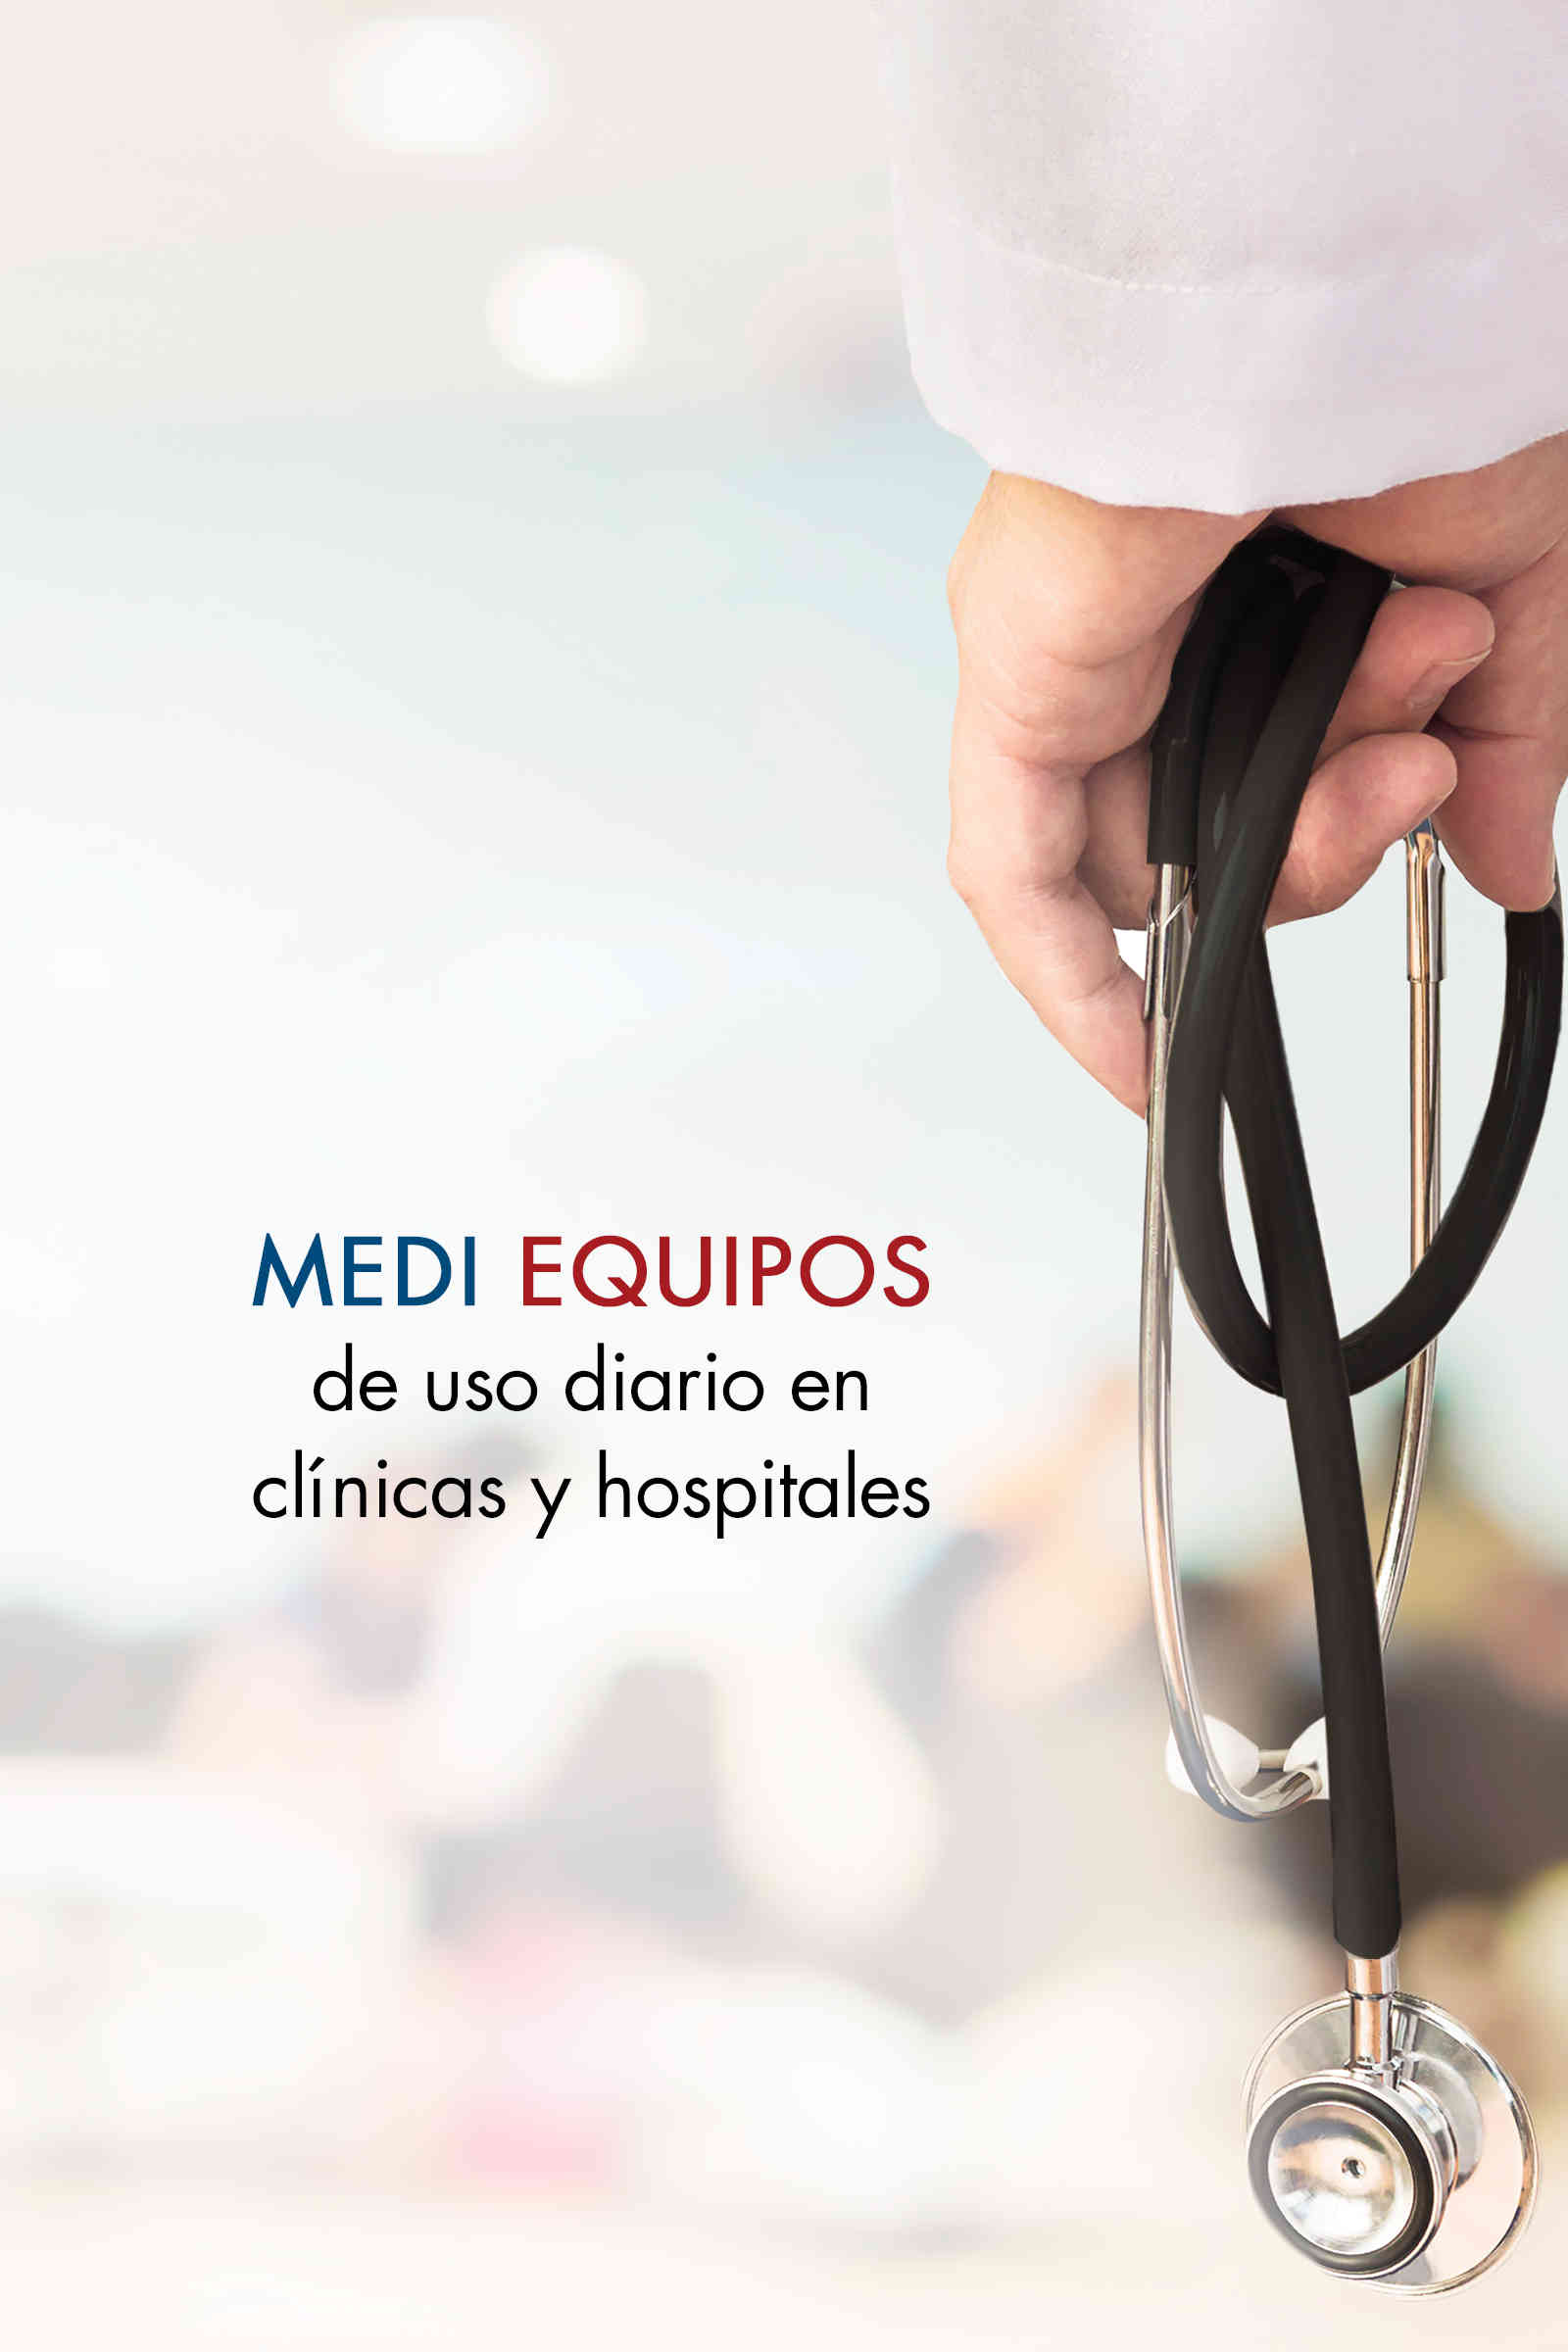 MEDI EQUIPOS de uso diario en clínicas y hospitales